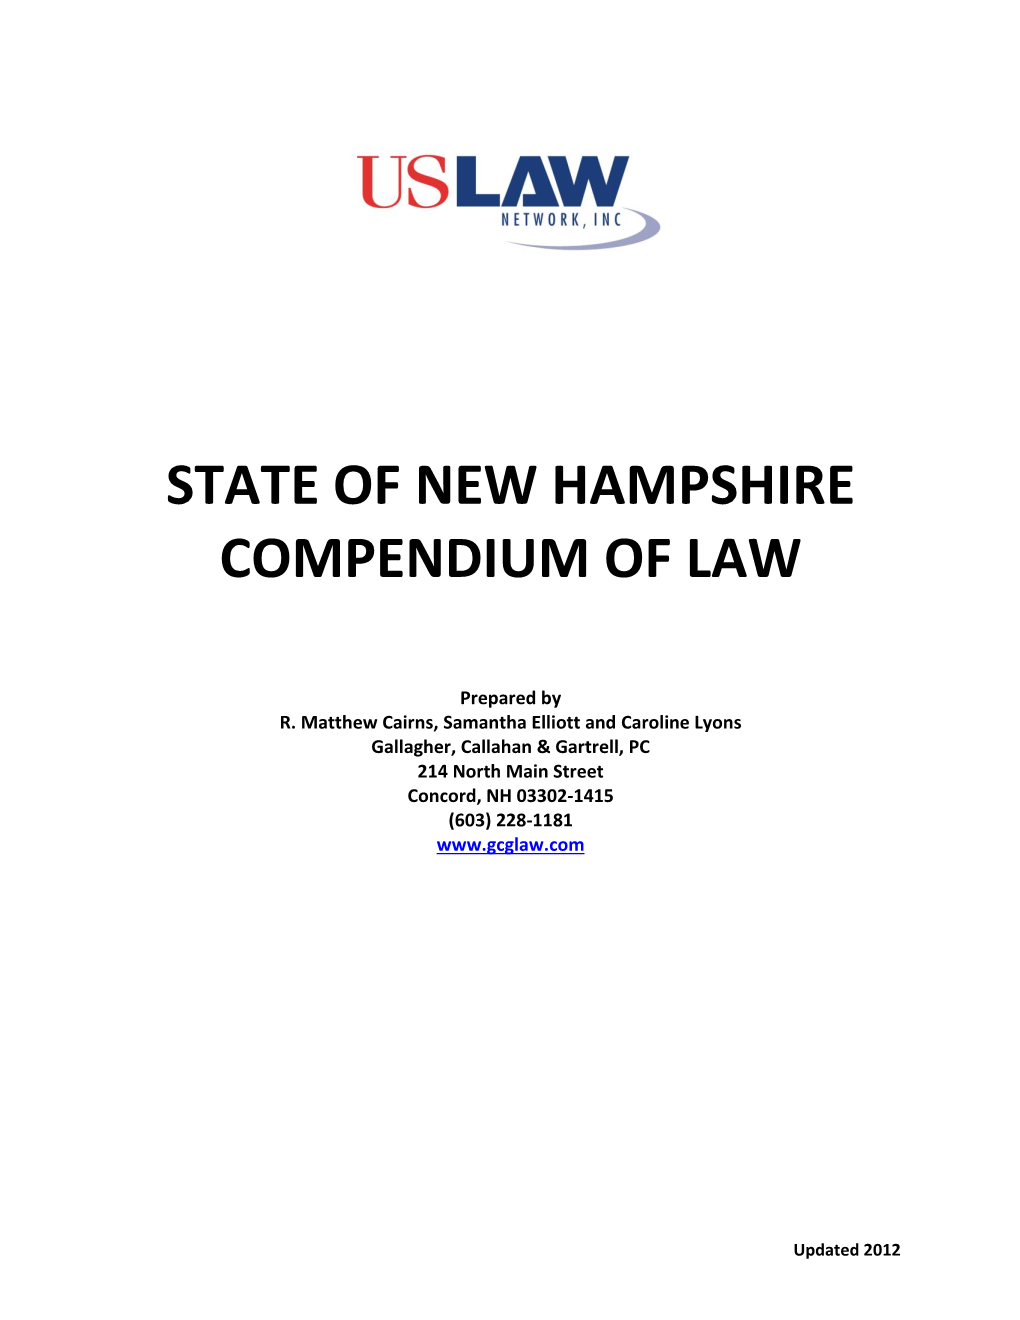 New Hampshire Compendium of Law